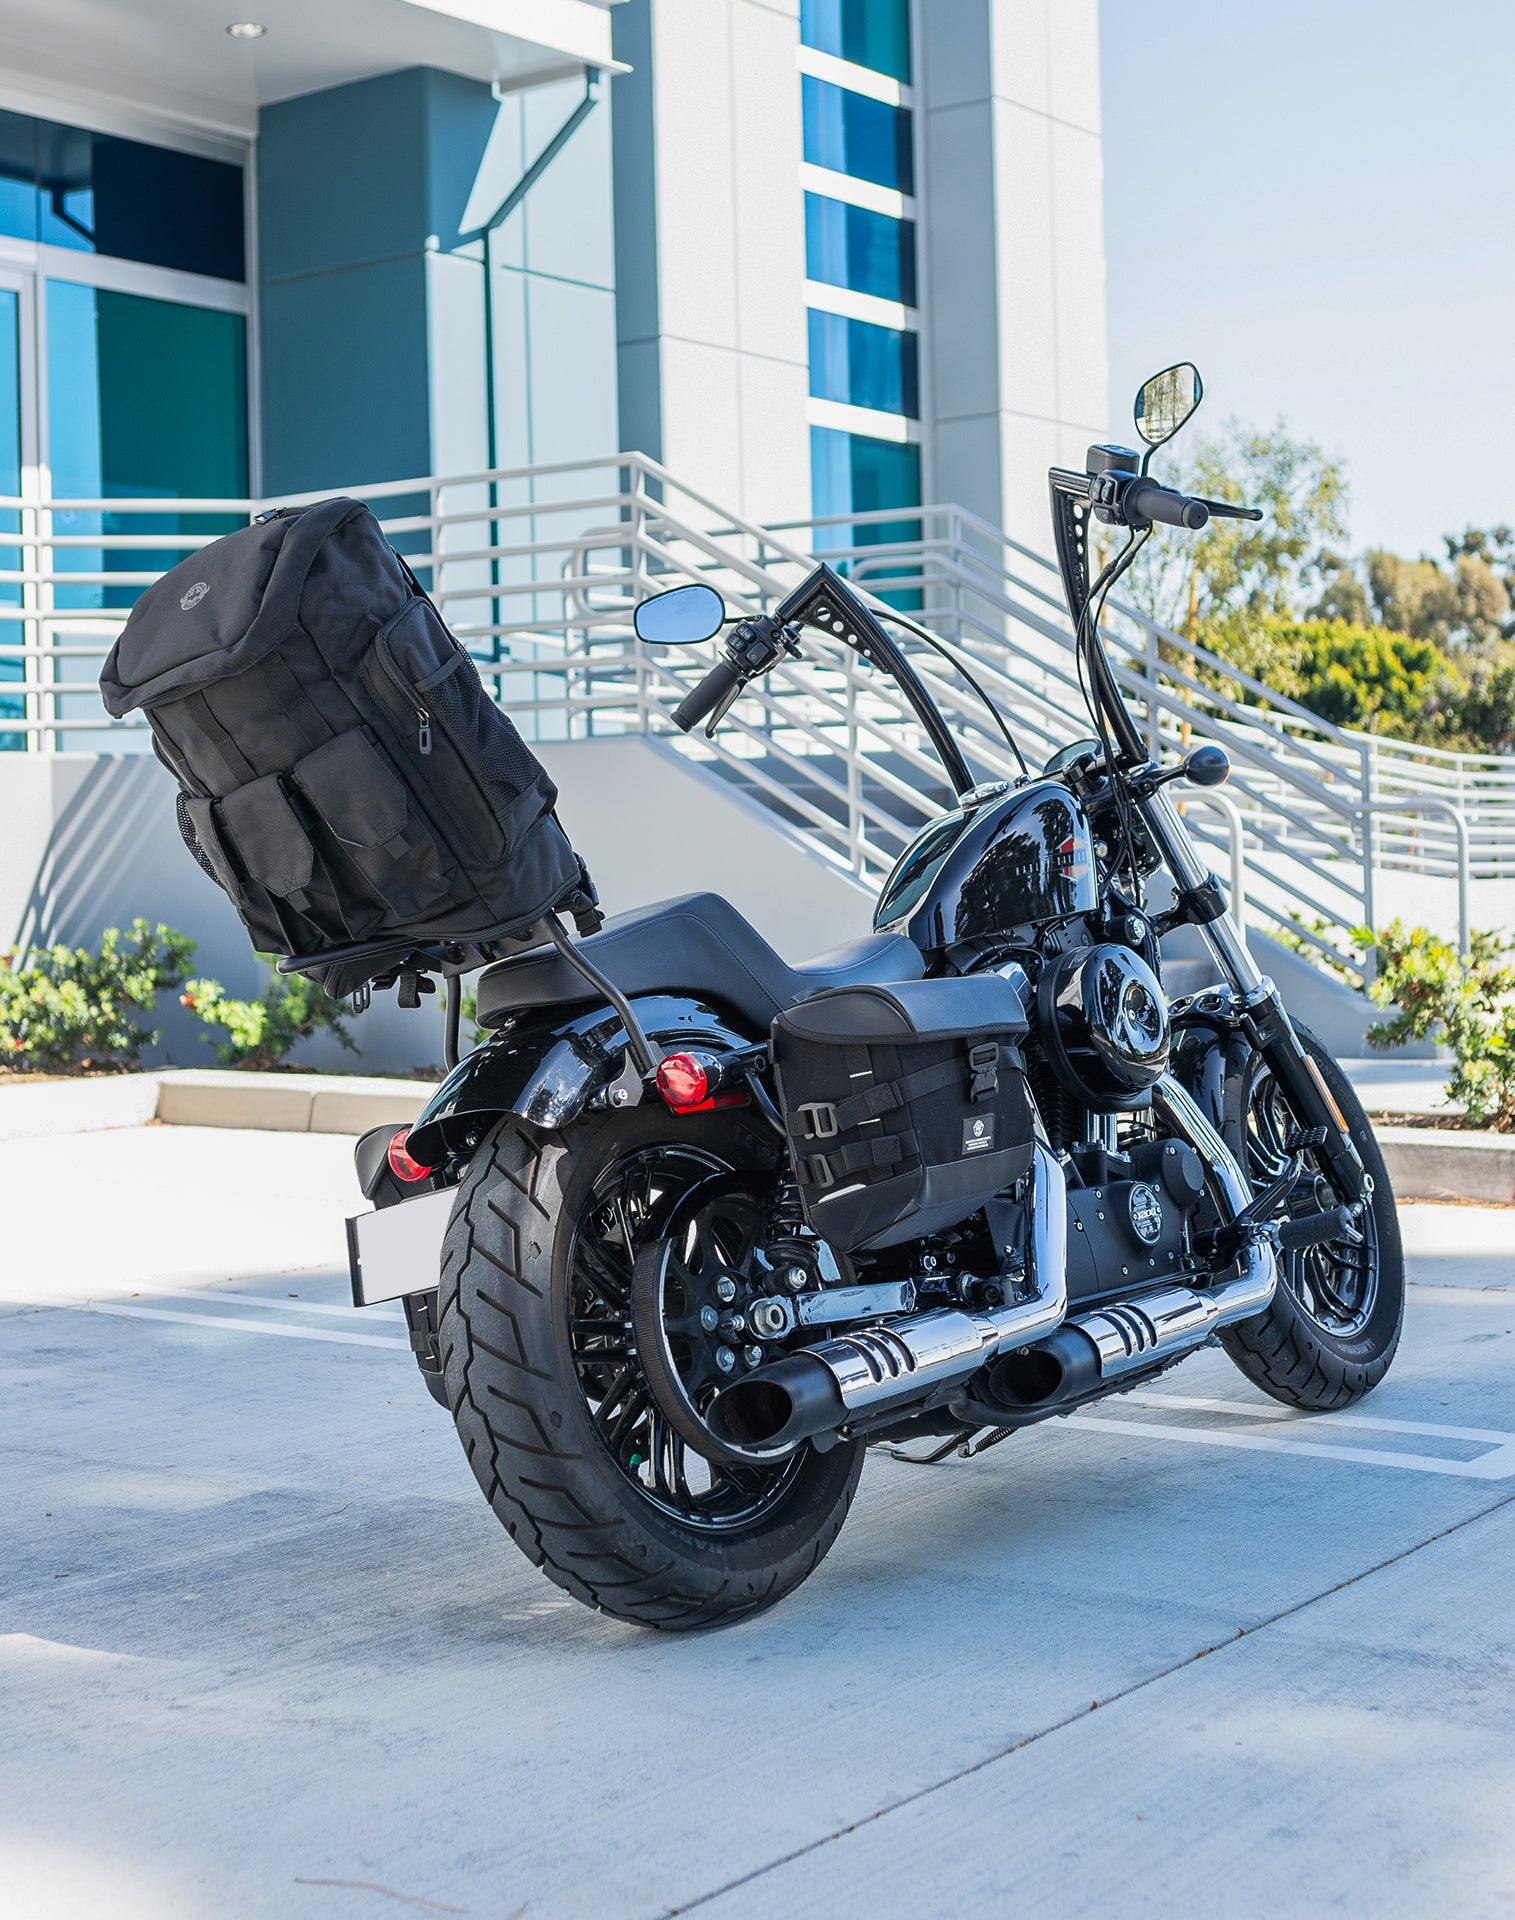 32L - Trident Large Suzuki Motorcycle Tail Bag